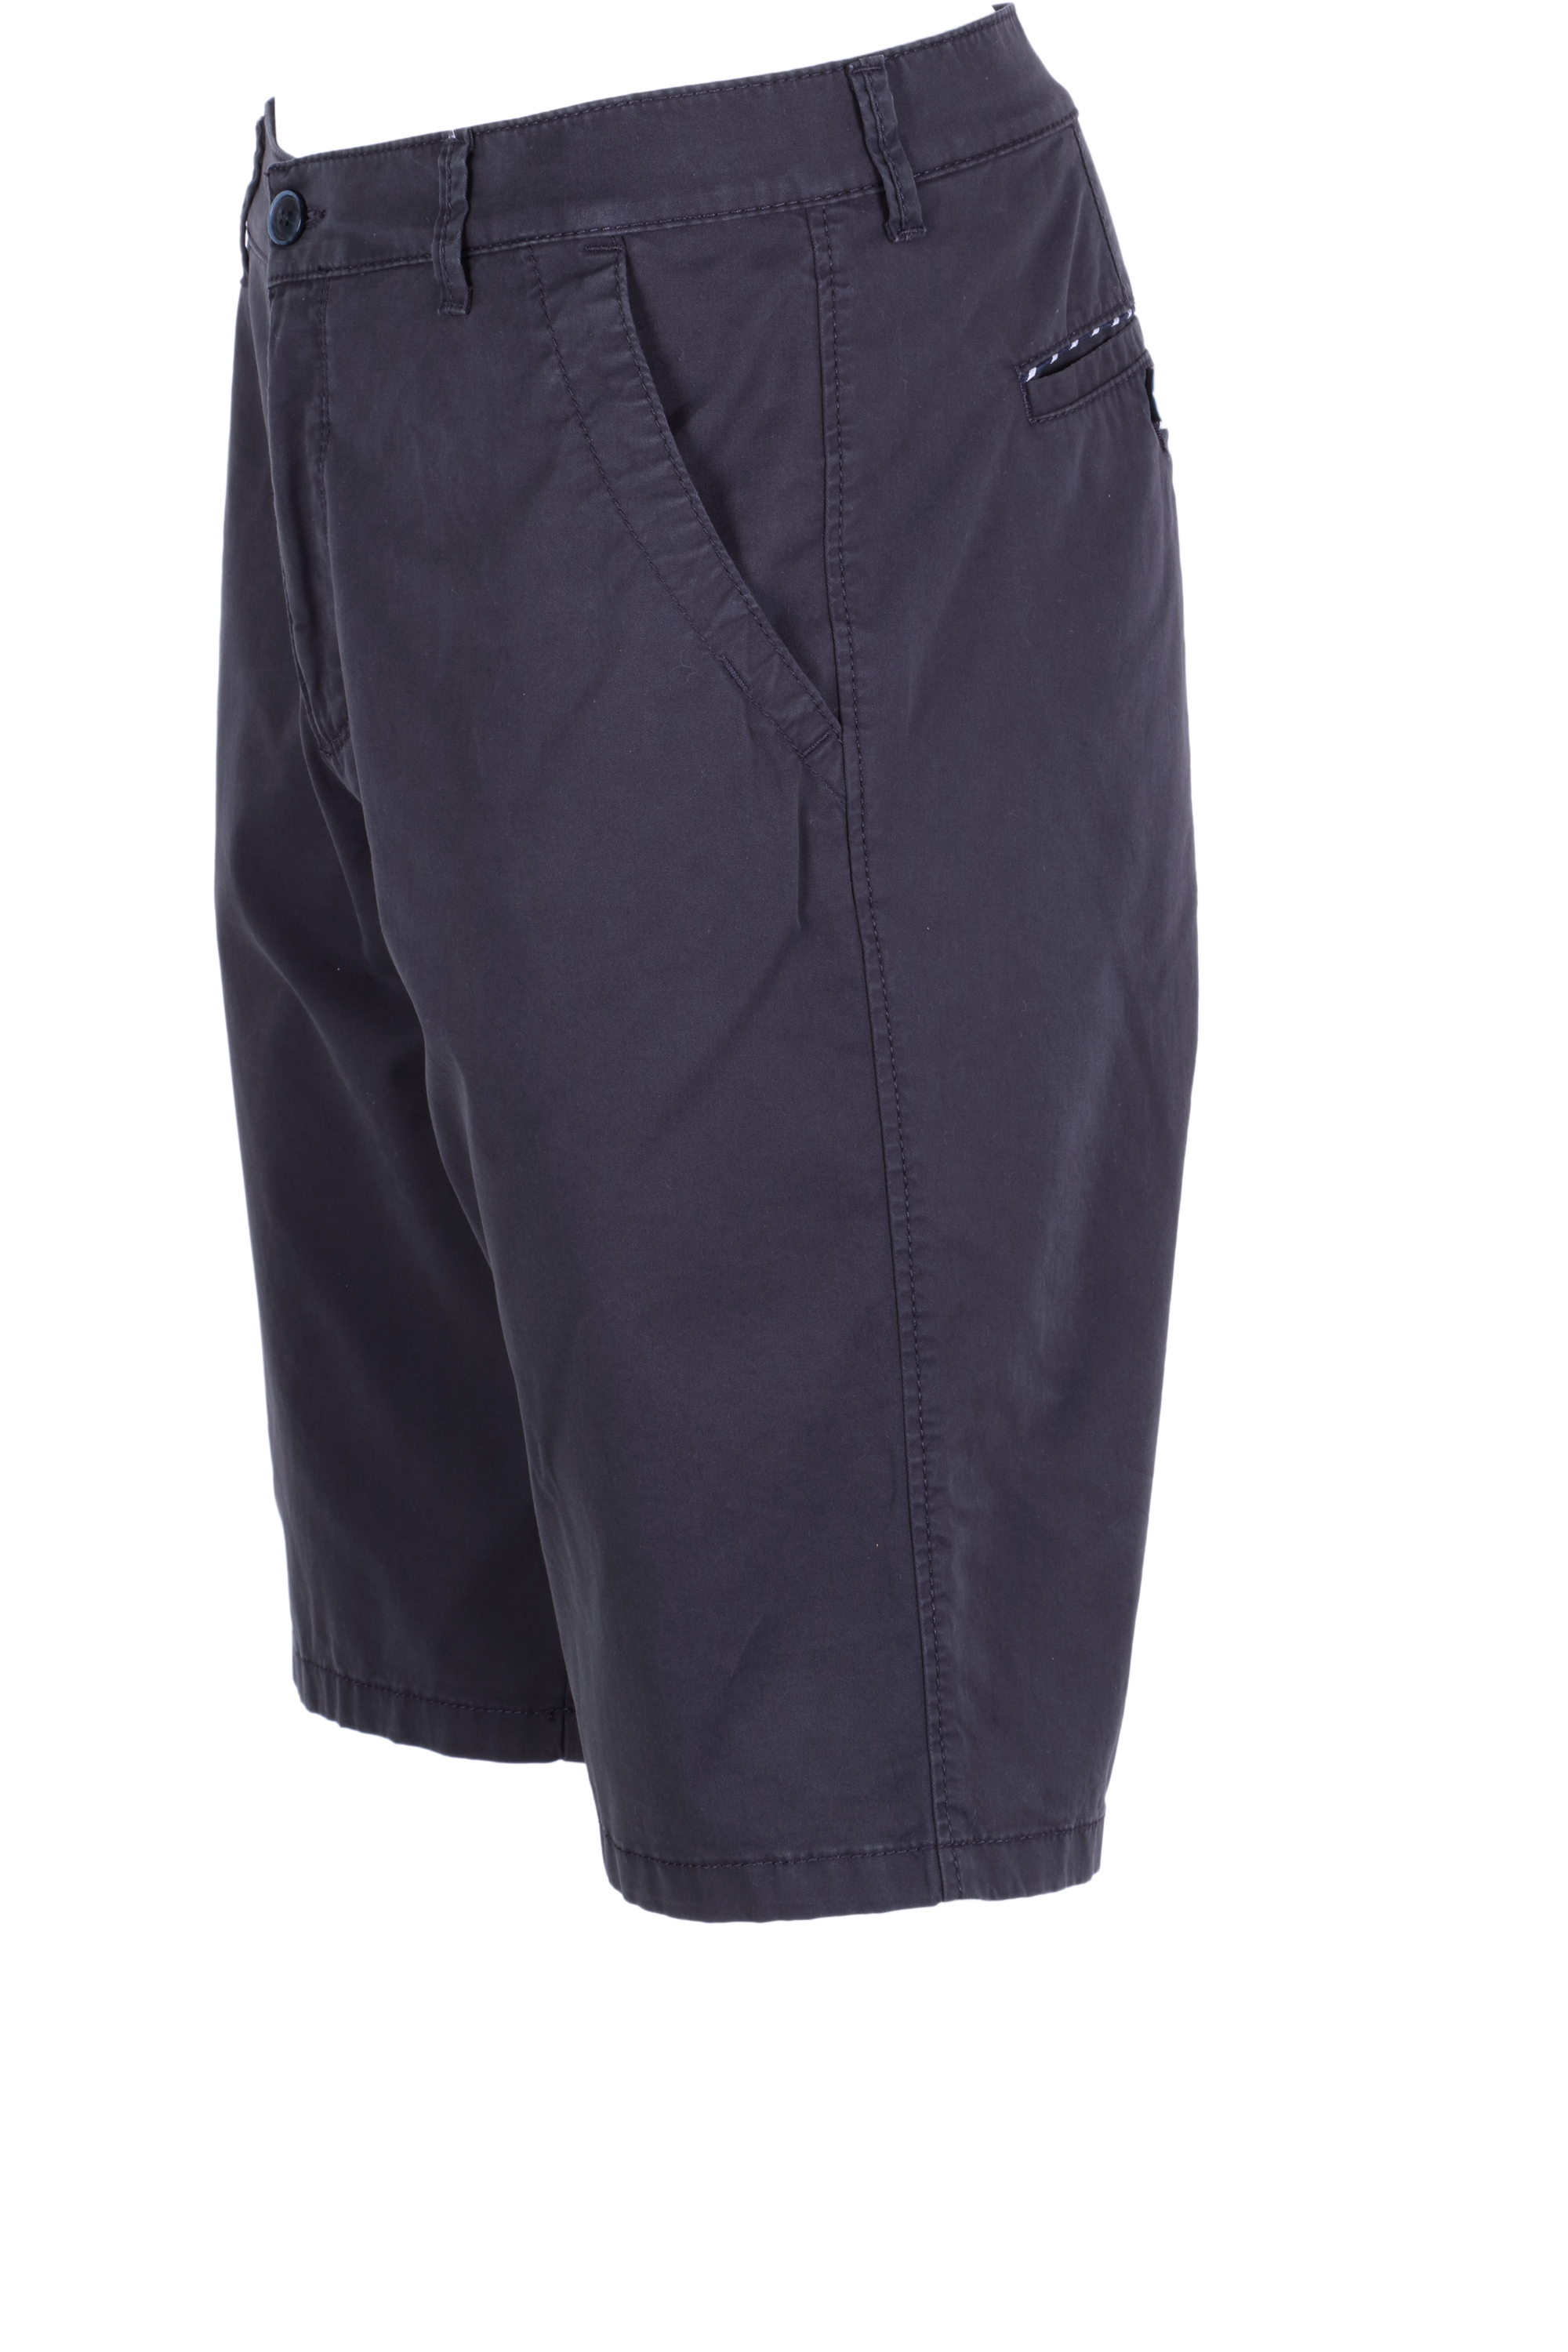 Pioneer Herren Chino Shorts - dunkelblau 34